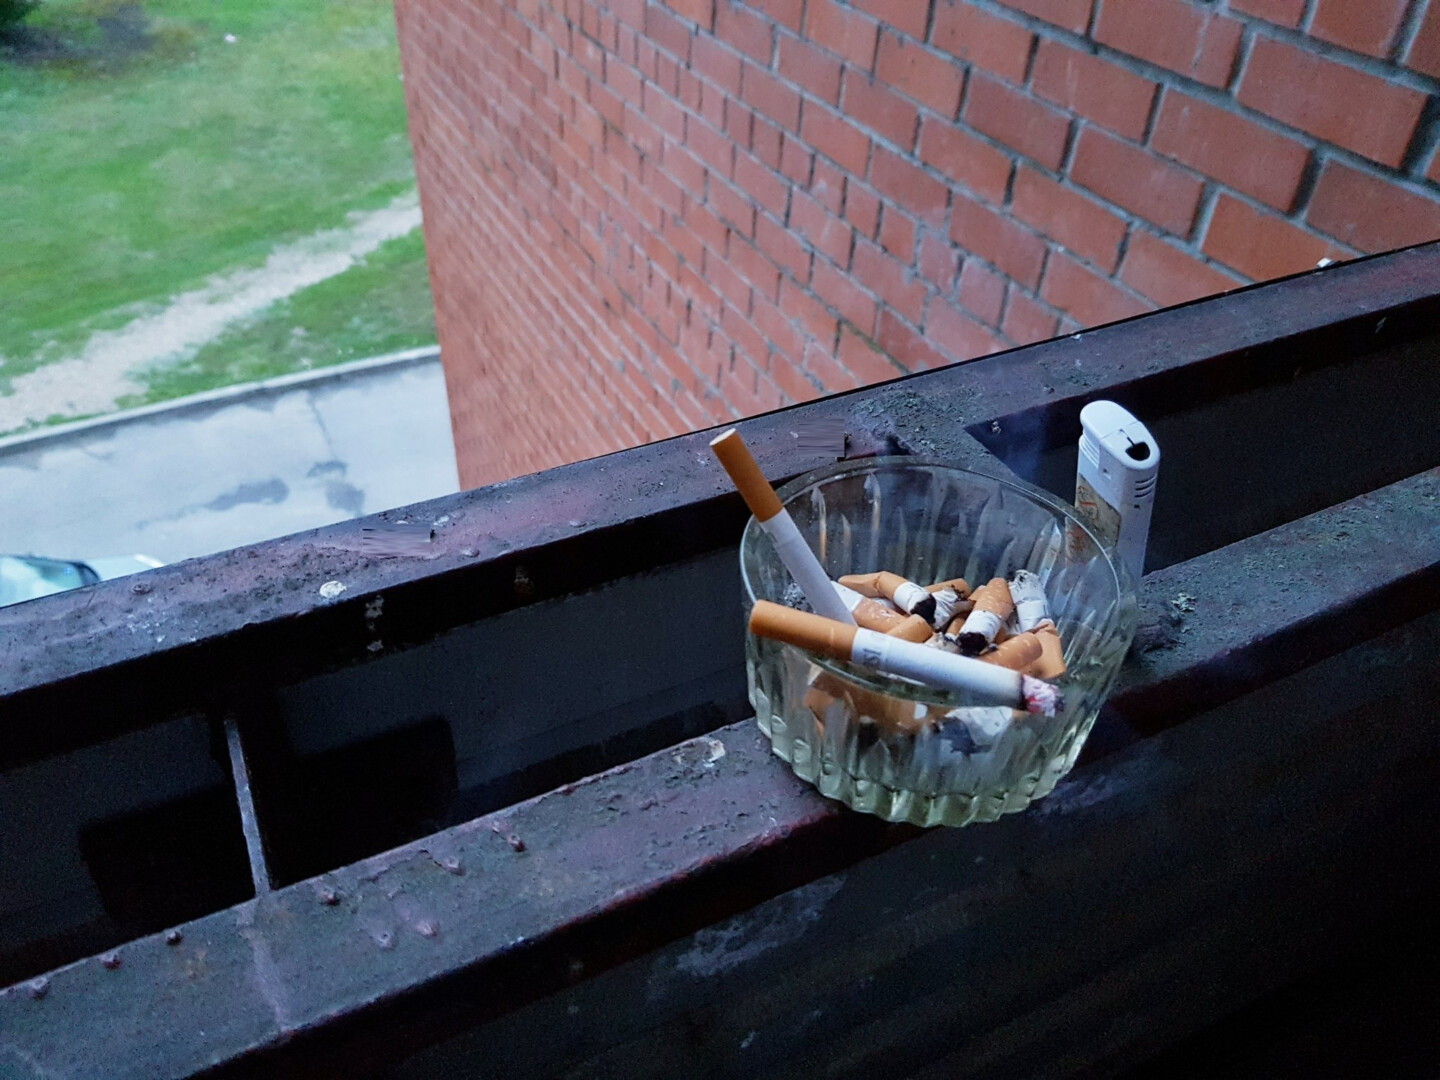 Seime gimė nauja idėja dėl prieš trejetą metų įsigaliojusio draudimo rūkyti daugiabučio balkonuose, jei tam prieštarauja bent vienas namo gyventojas.